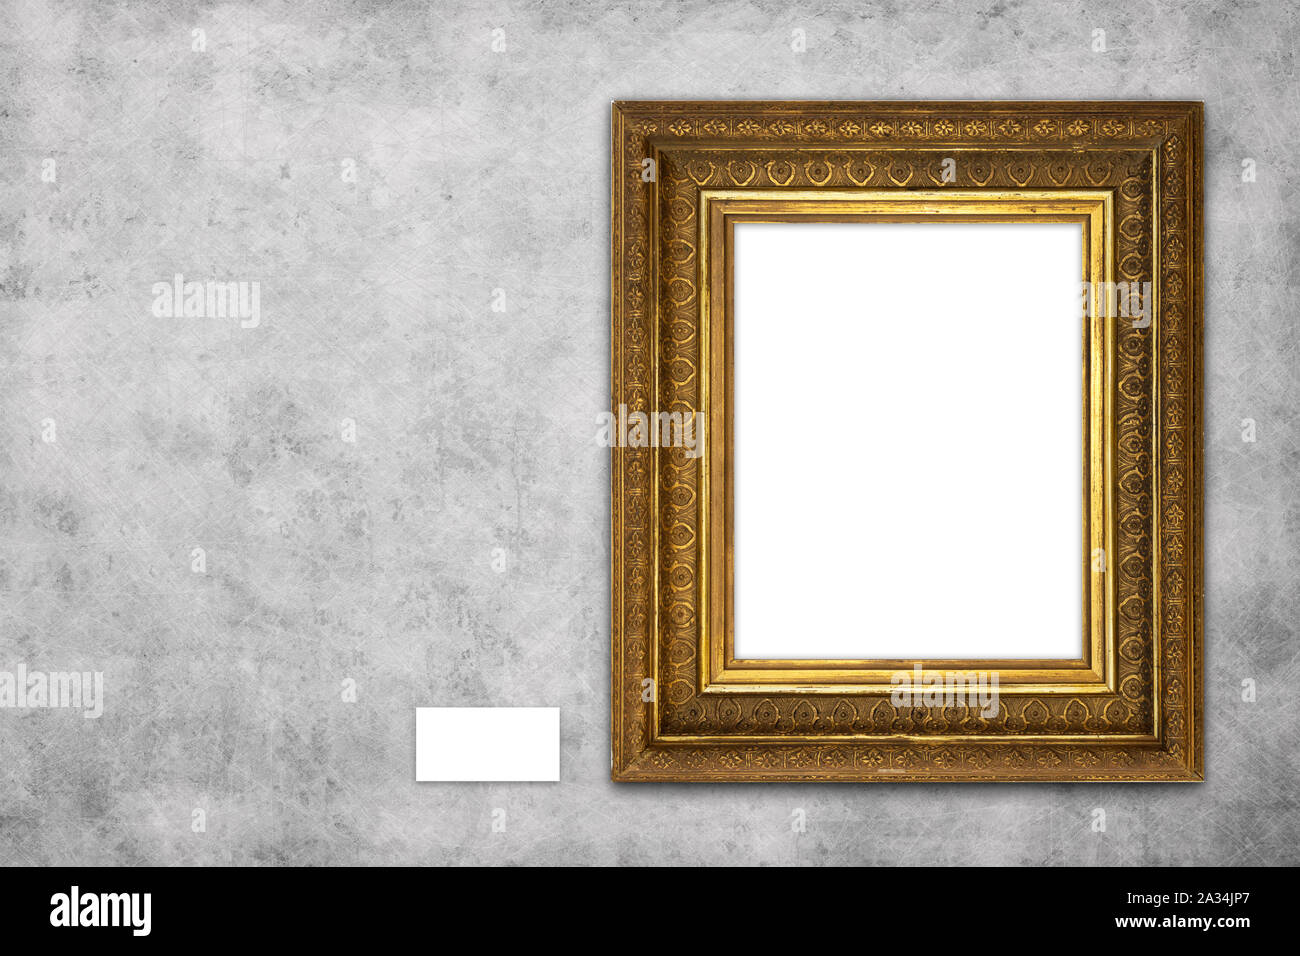 Vuoto bella cornice immagine mock-up appeso alla parete di cemento in galleria Foto Stock